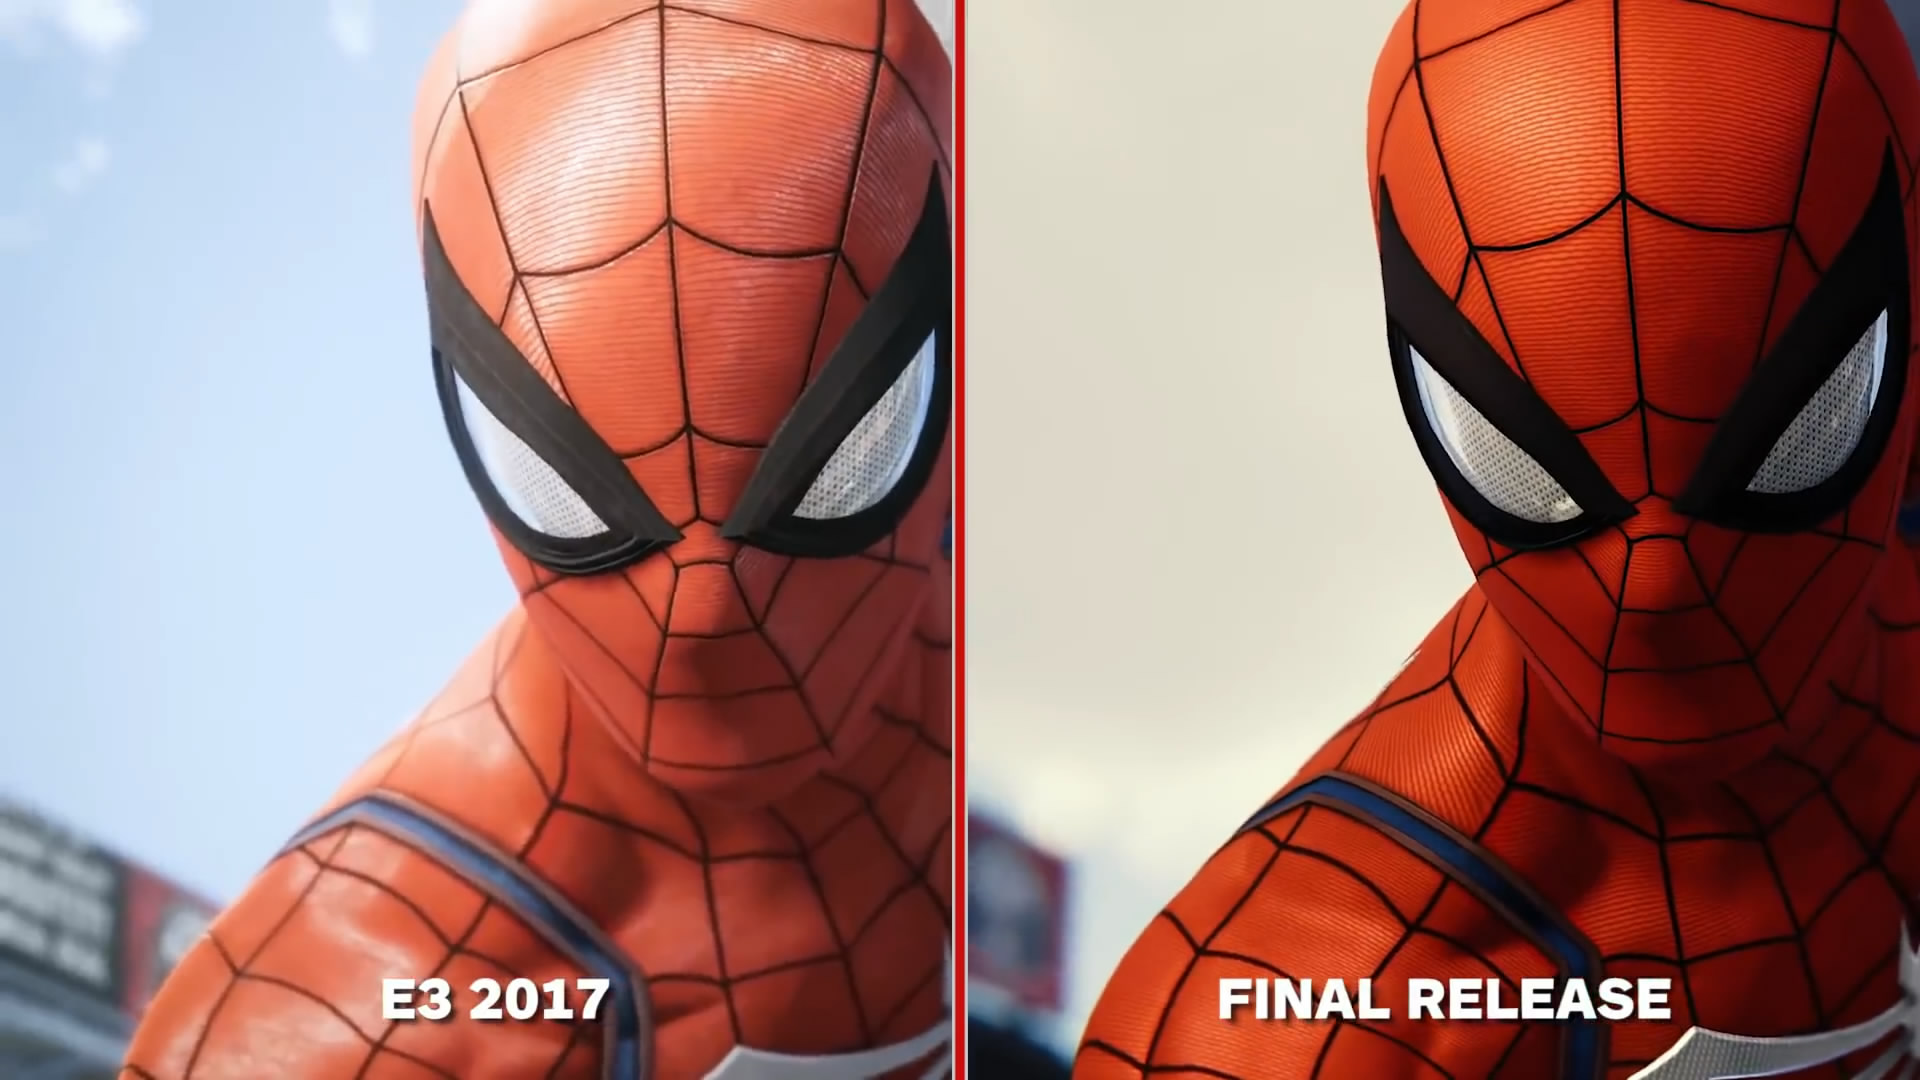 《蜘蛛人》E3版與正式版對比影片 畫質縮水還是提升了?